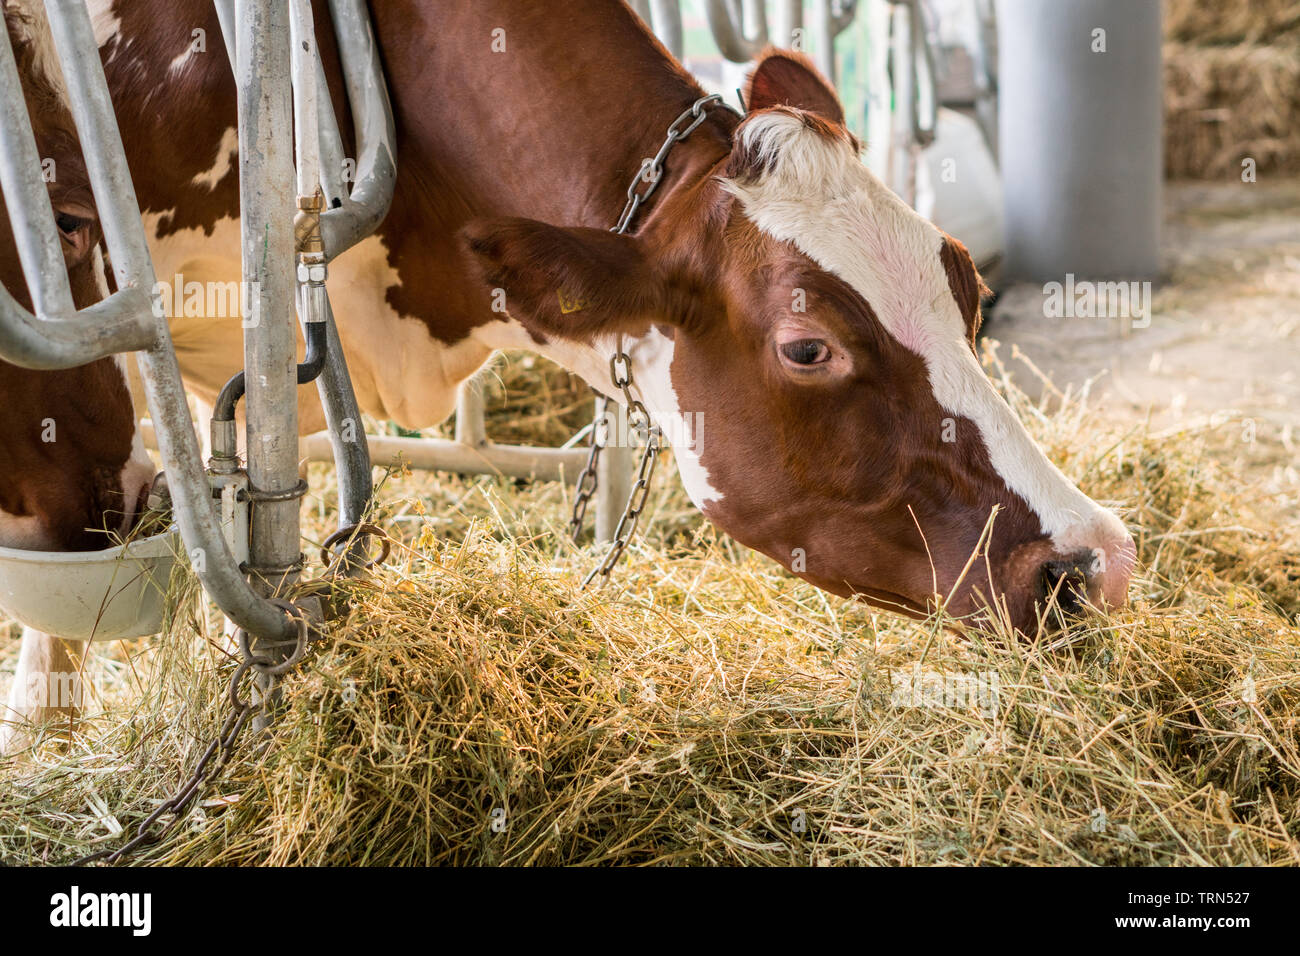 Brown jersey vaches dans une étable manger bio le foin à la ferme laitière. Concept d'agriculture de l'industrie de l'Agriculture Banque D'Images